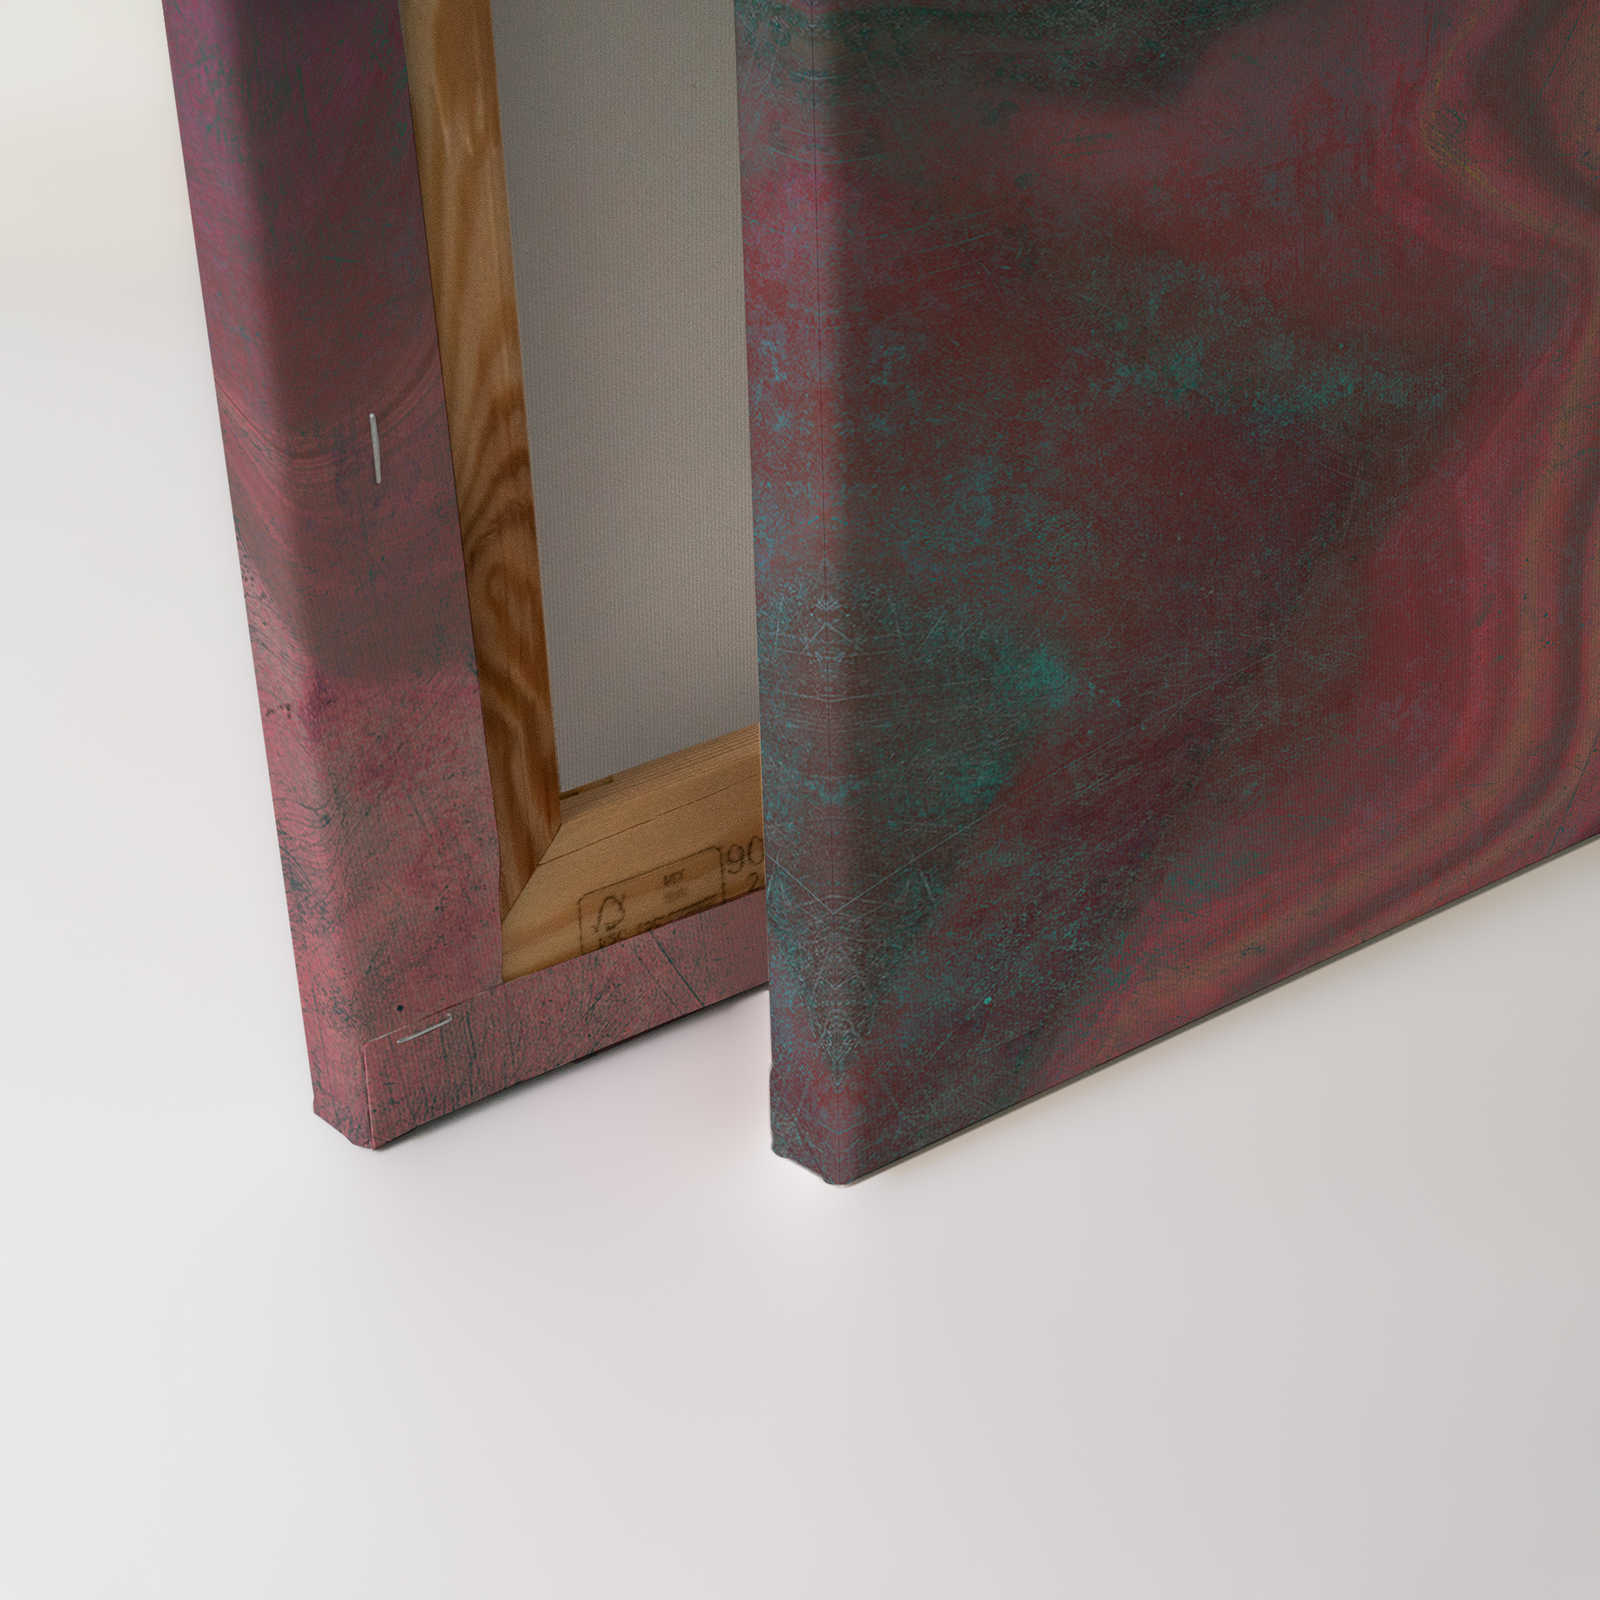             Marmo 1 - Marmo colorato come quadro su tela con struttura a graffi - 0,90 m x 0,60 m
        